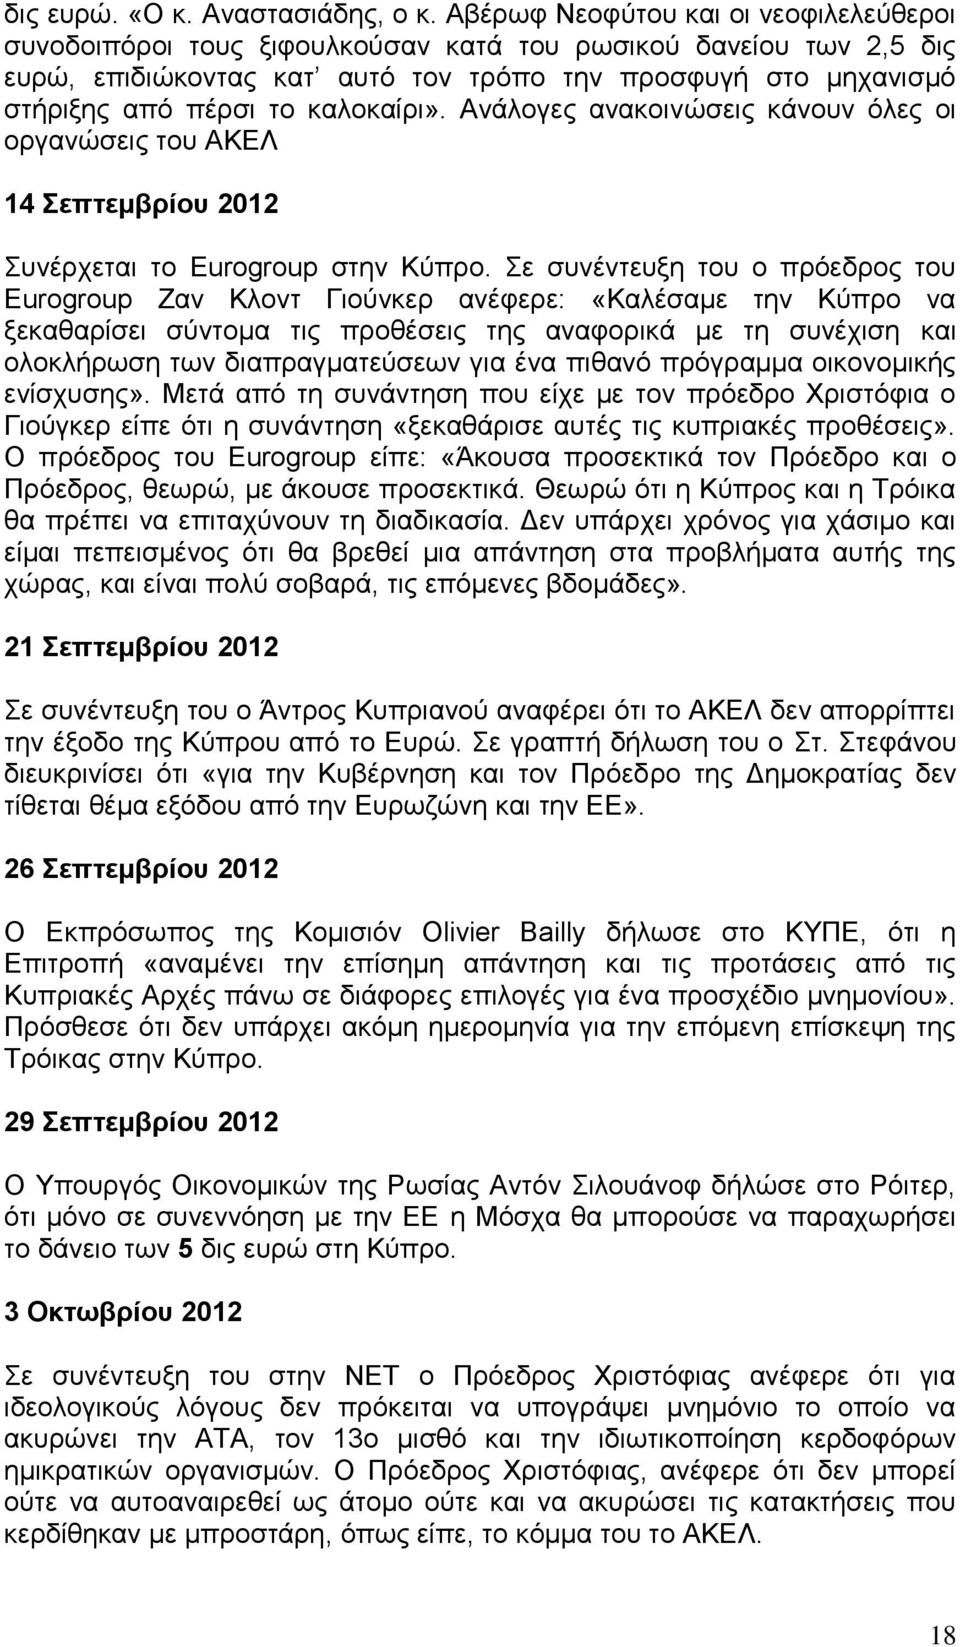 θαινθαίξη». Αλάινγεο αλαθνηλψζεηο θάλνπλ φιεο νη νξγαλψζεηο ηνπ ΑΚΔΛ 14 Σεπτεμβρίοσ 2012 πλέξρεηαη ην Eurogroup ζηελ Κχπξν.